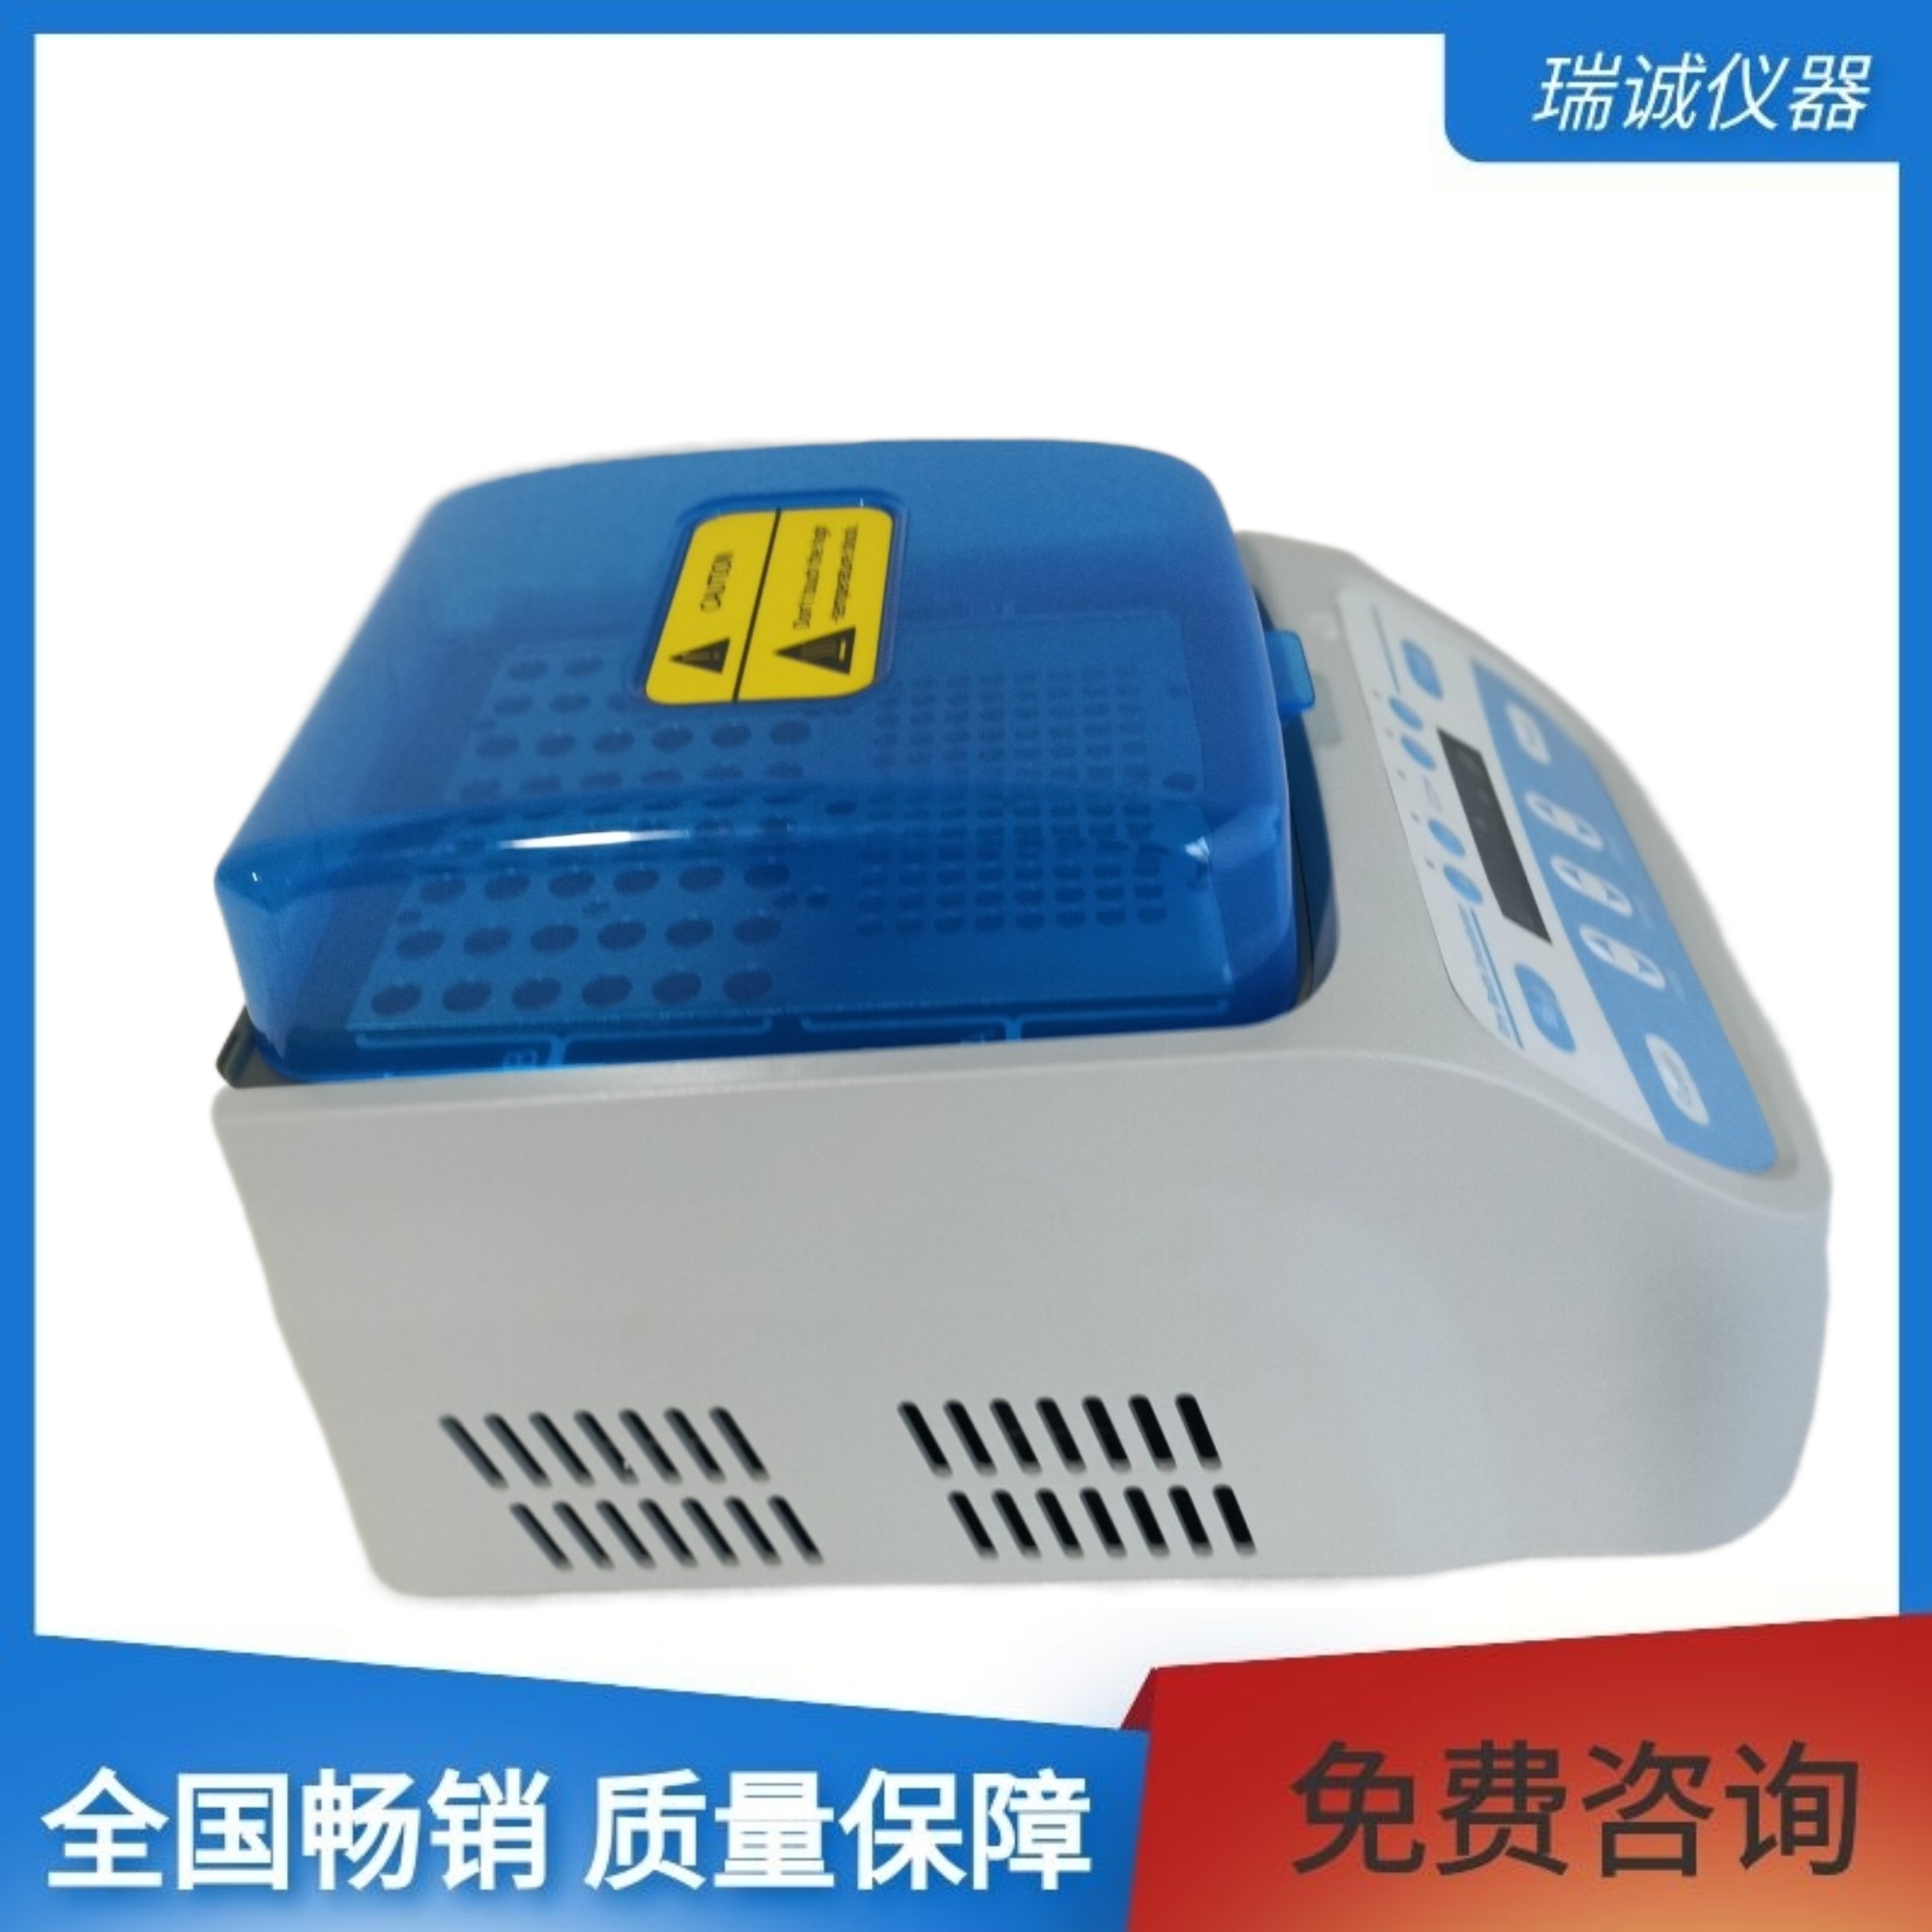 细菌内毒素恒温仪-DH200内置软件和硬件双重超温保护装置，使用更可靠